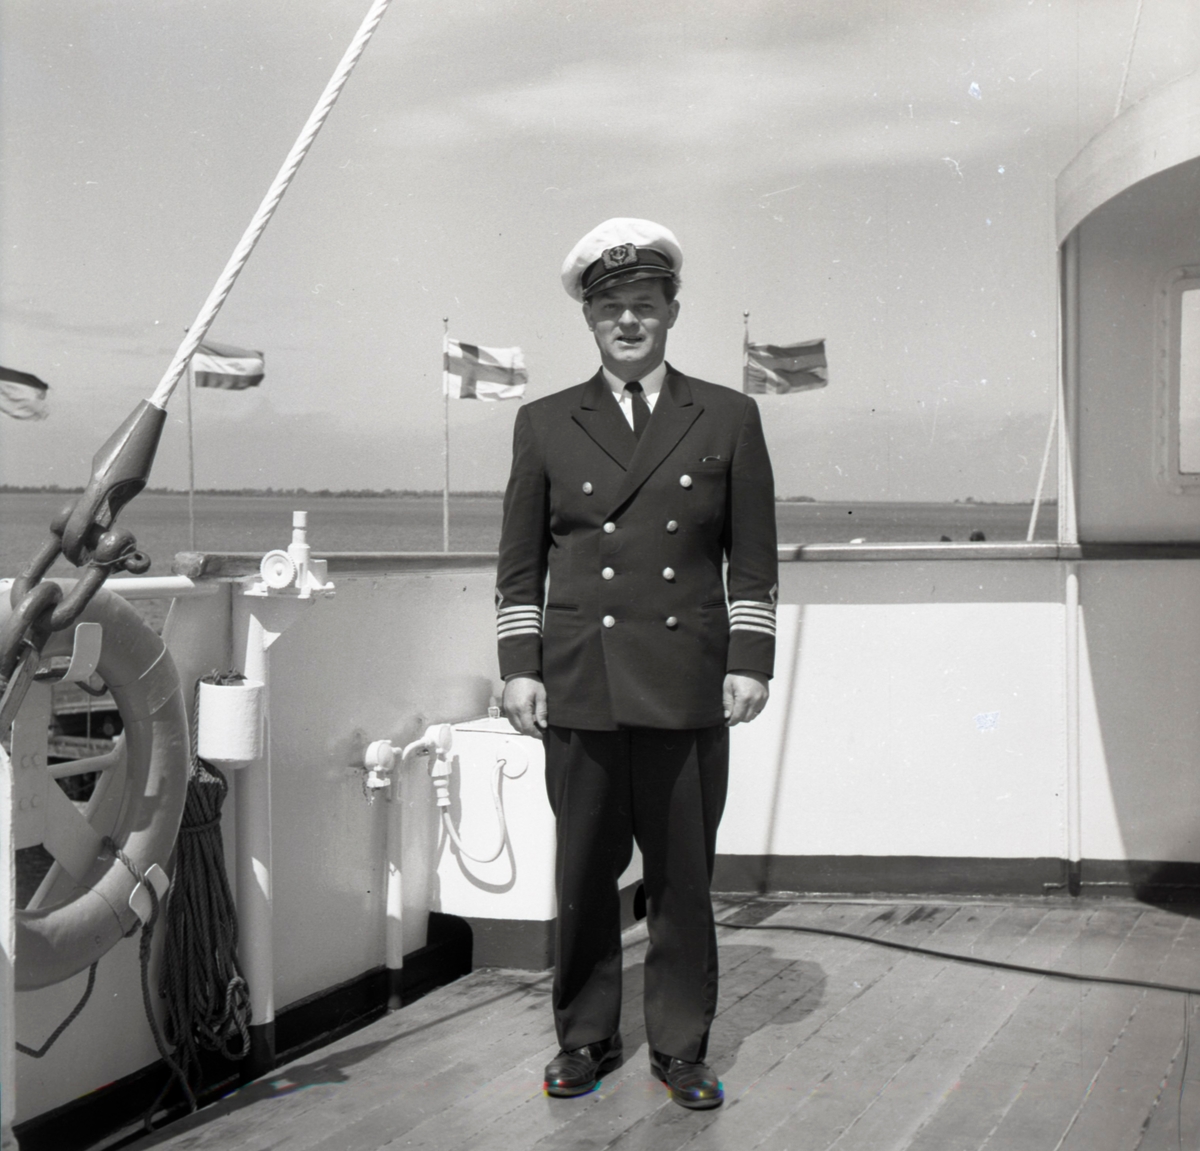 Byxelkroks hamn, ombord på M/S Nordpol 14/6 1959. Kaptenen på bild.